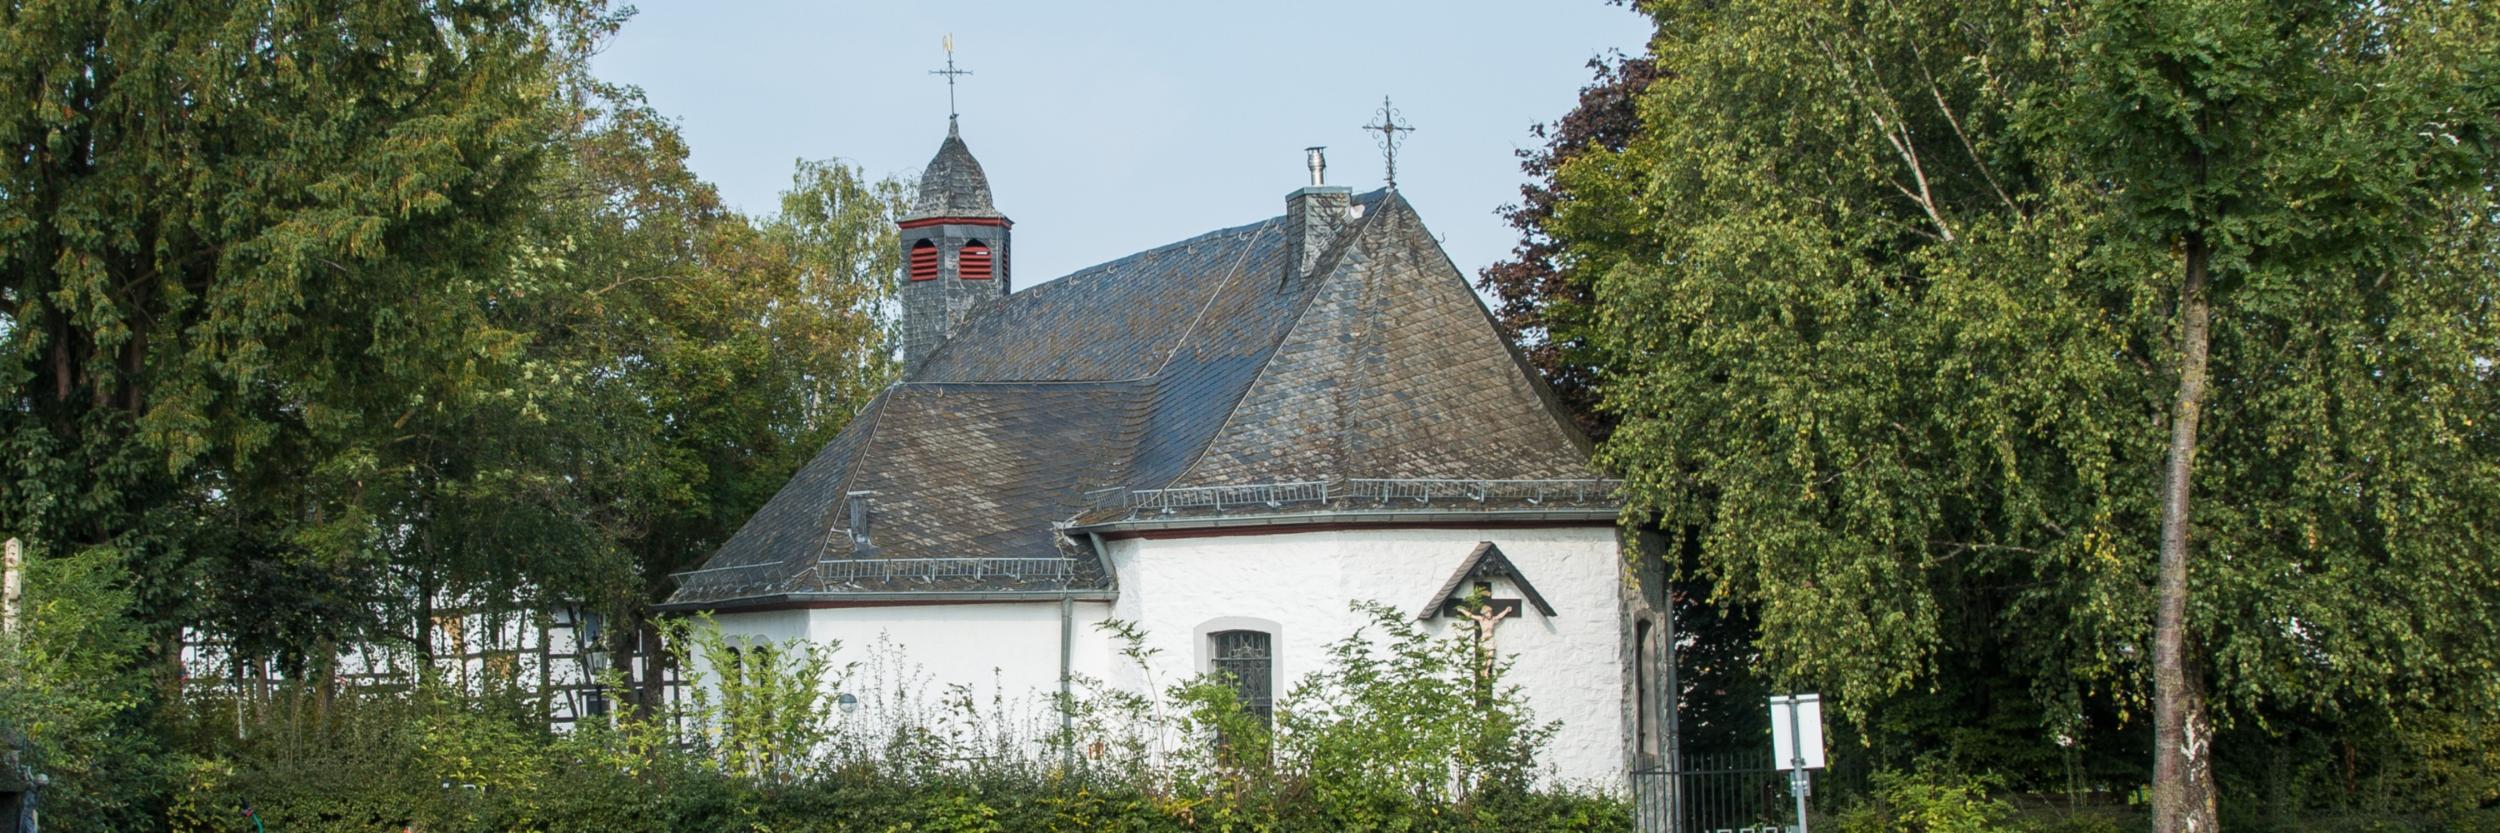 St. Josef Kirche Queckenberg